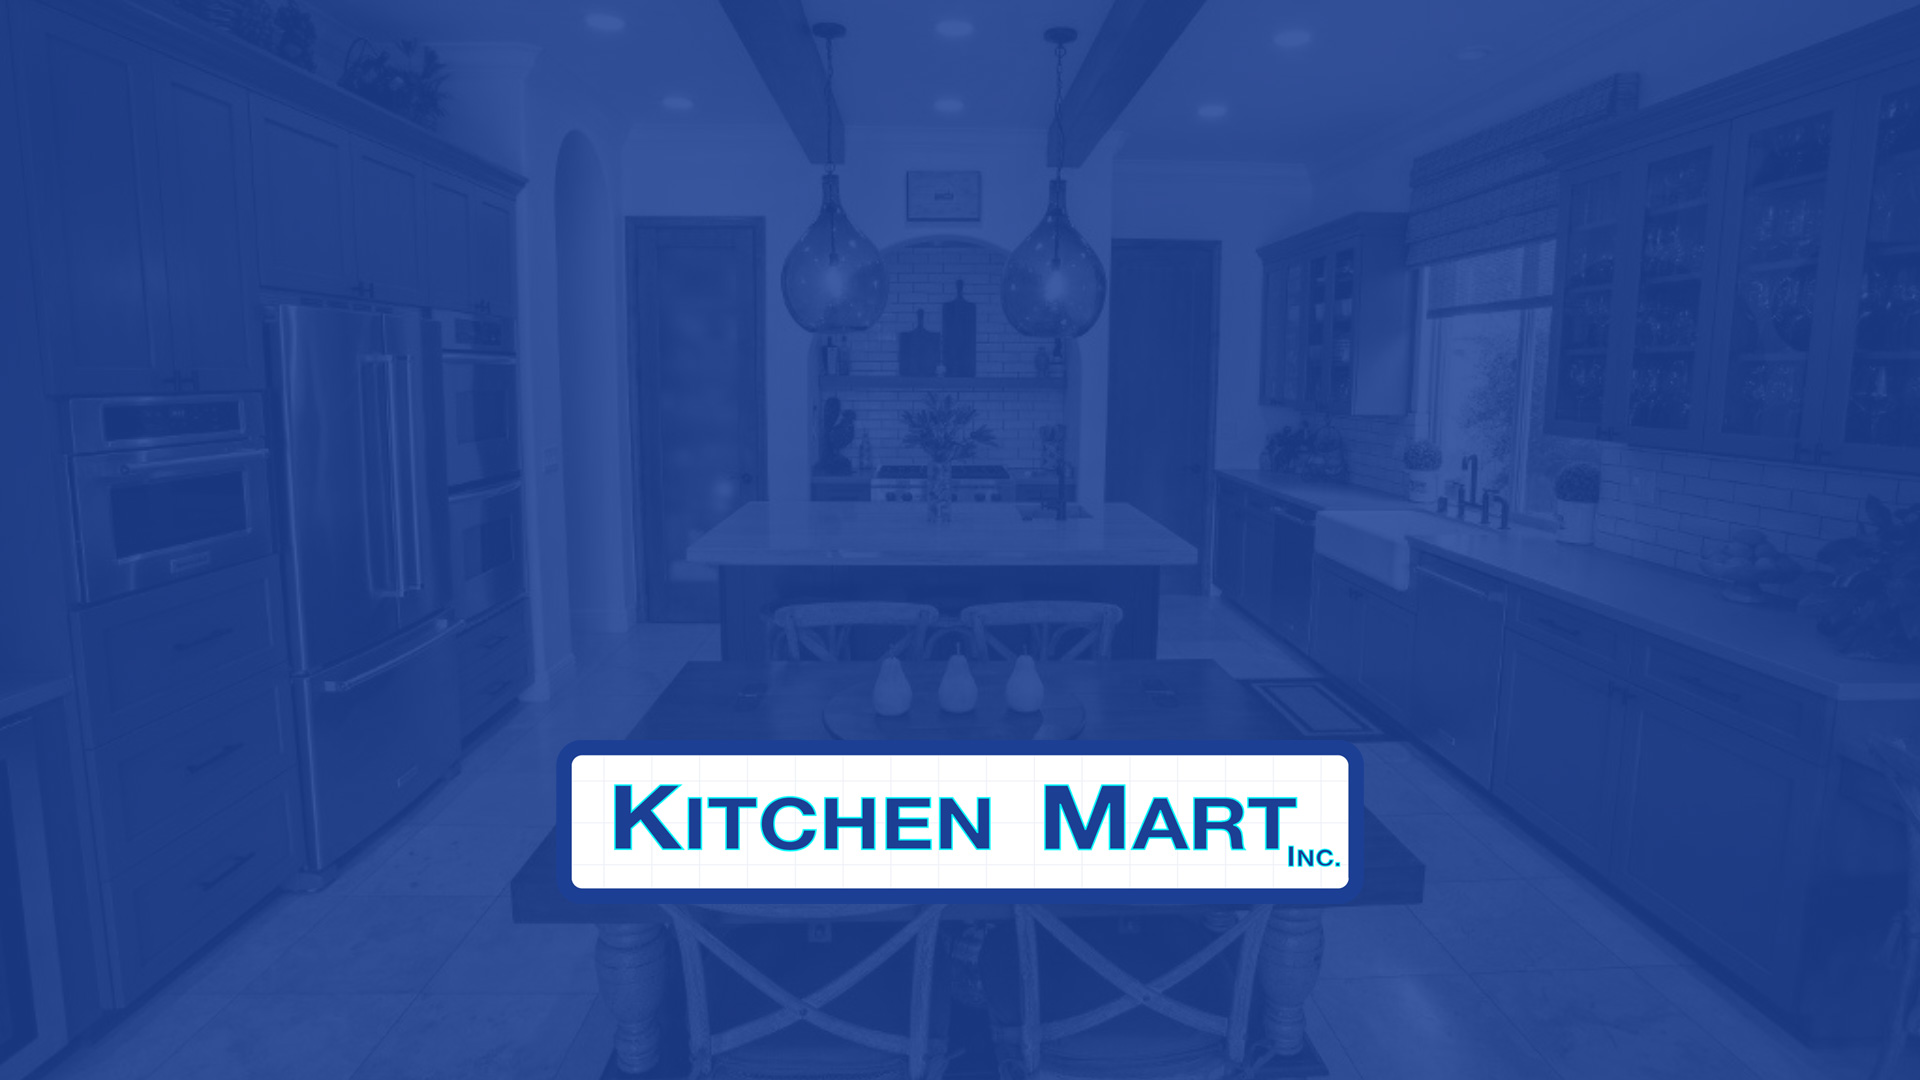 Why Trust Kitchen Mart